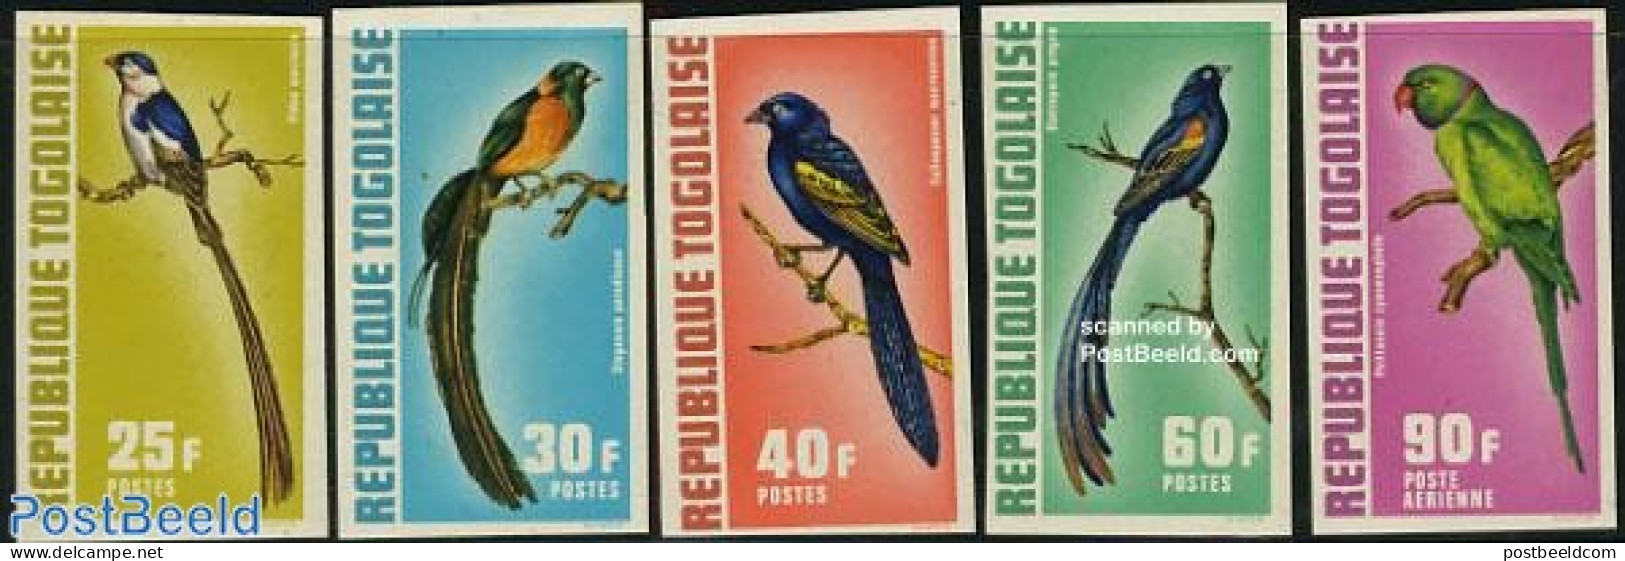 Togo 1972 Birds 5v Imperforated, Mint NH, Nature - Birds - Togo (1960-...)